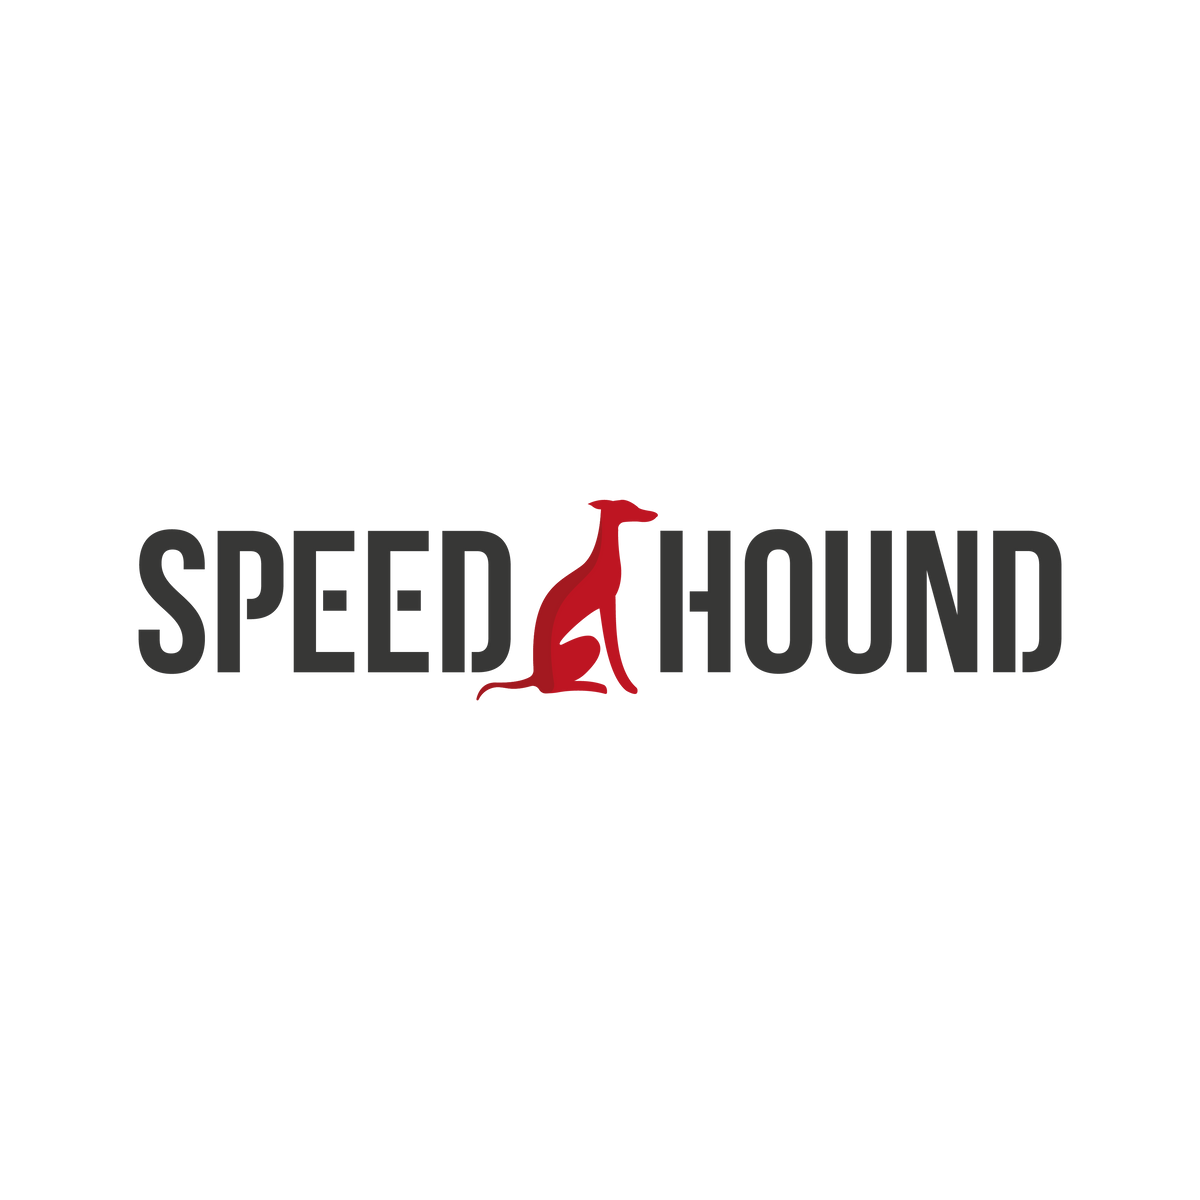 Speed Hound